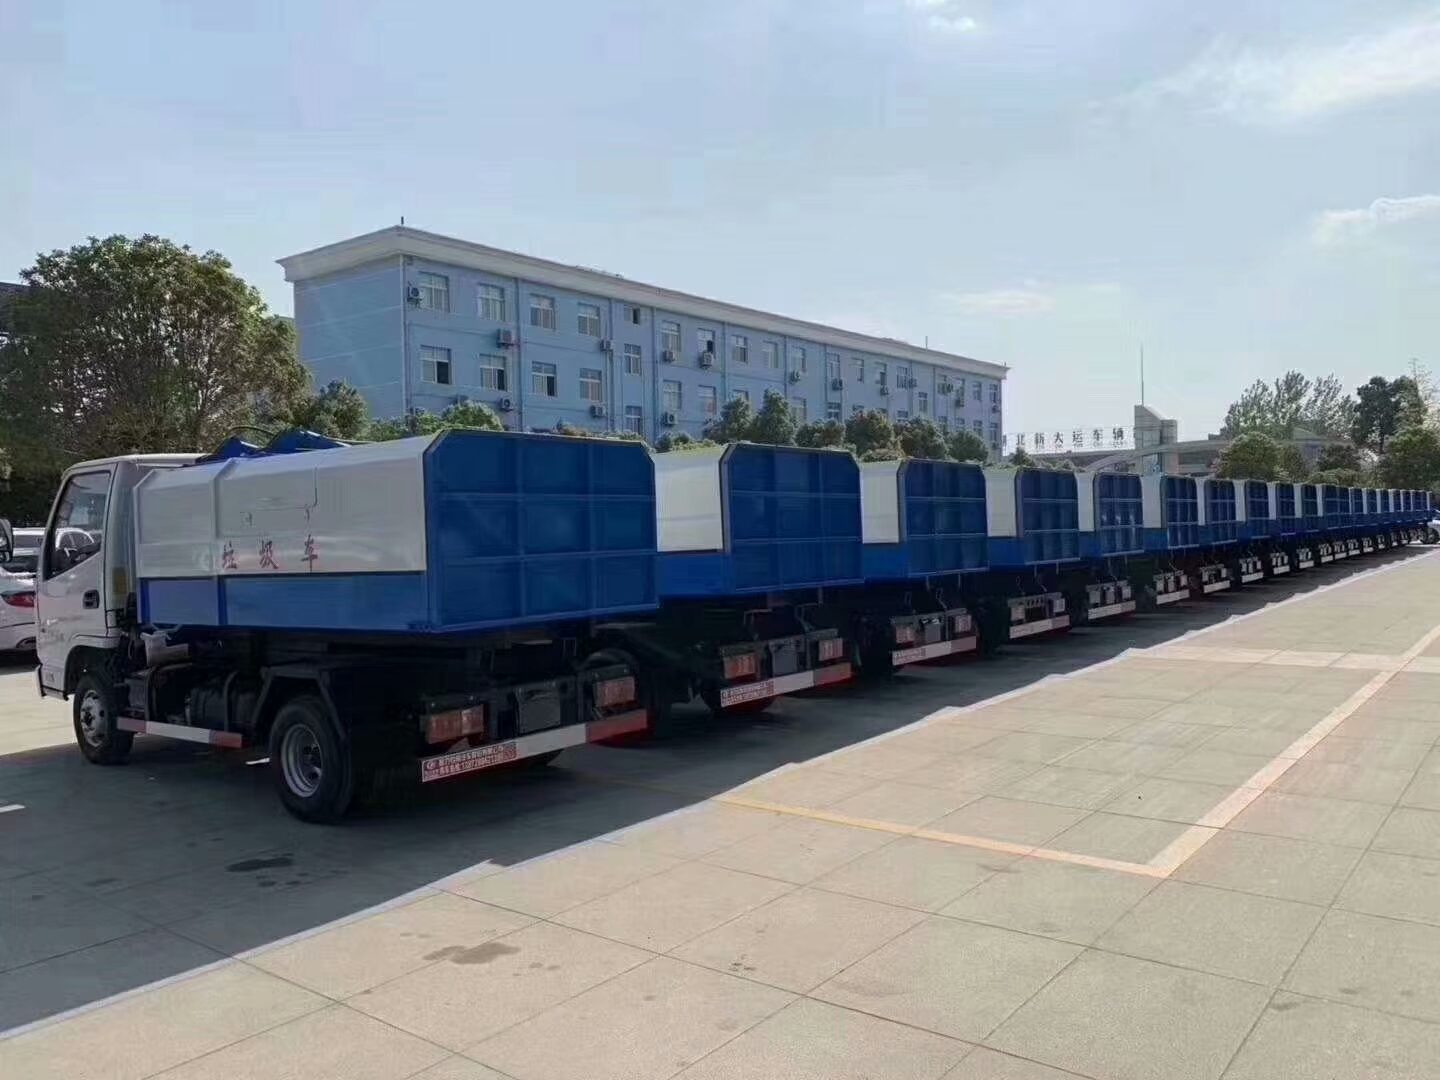 深圳环保科技公司订购90台凯马挂桶垃圾车